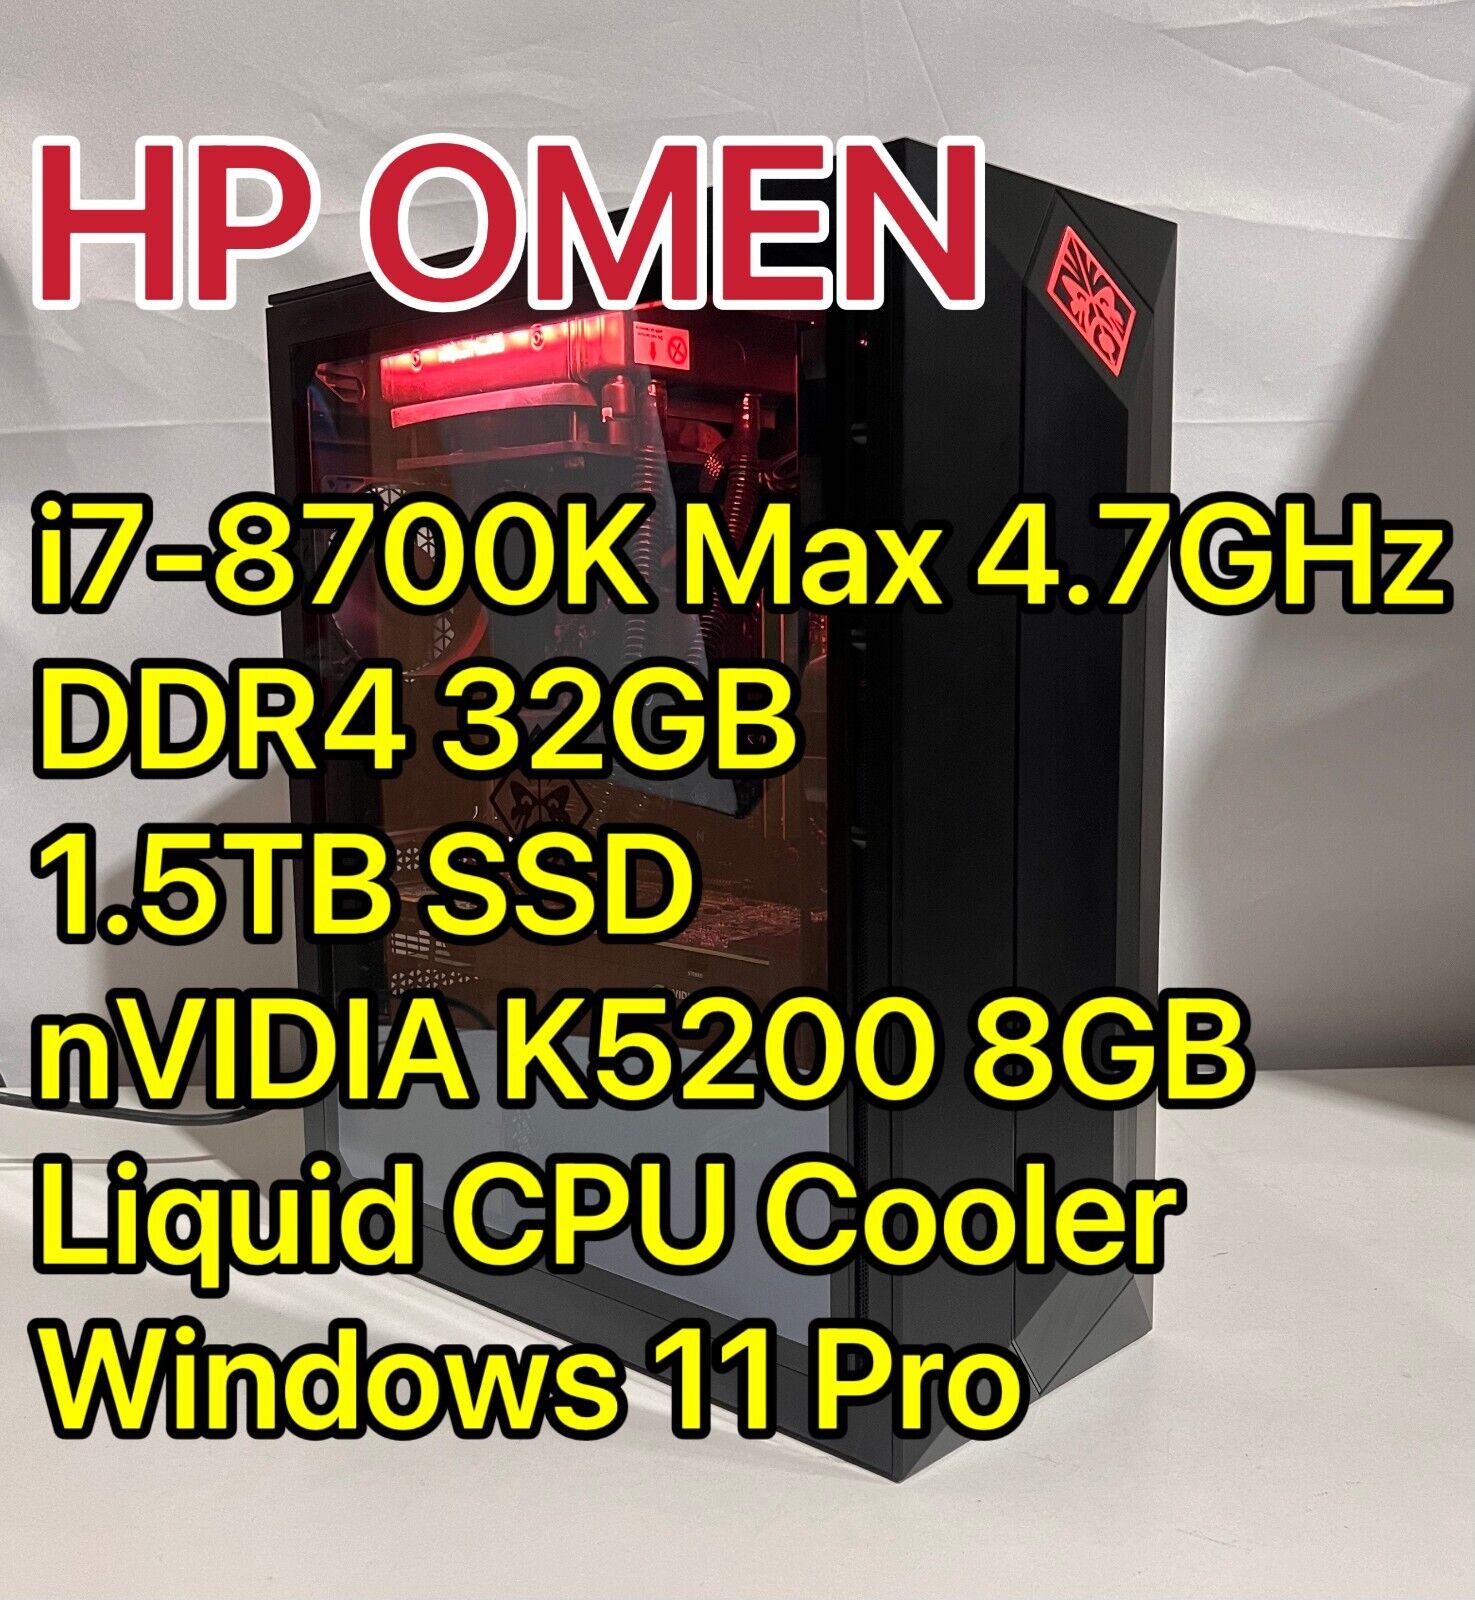 HP OMEN Gaming PC Intel i7-8700K / 32GB / 1.5TB SSD / K5200 GPU 8GB Windows 11